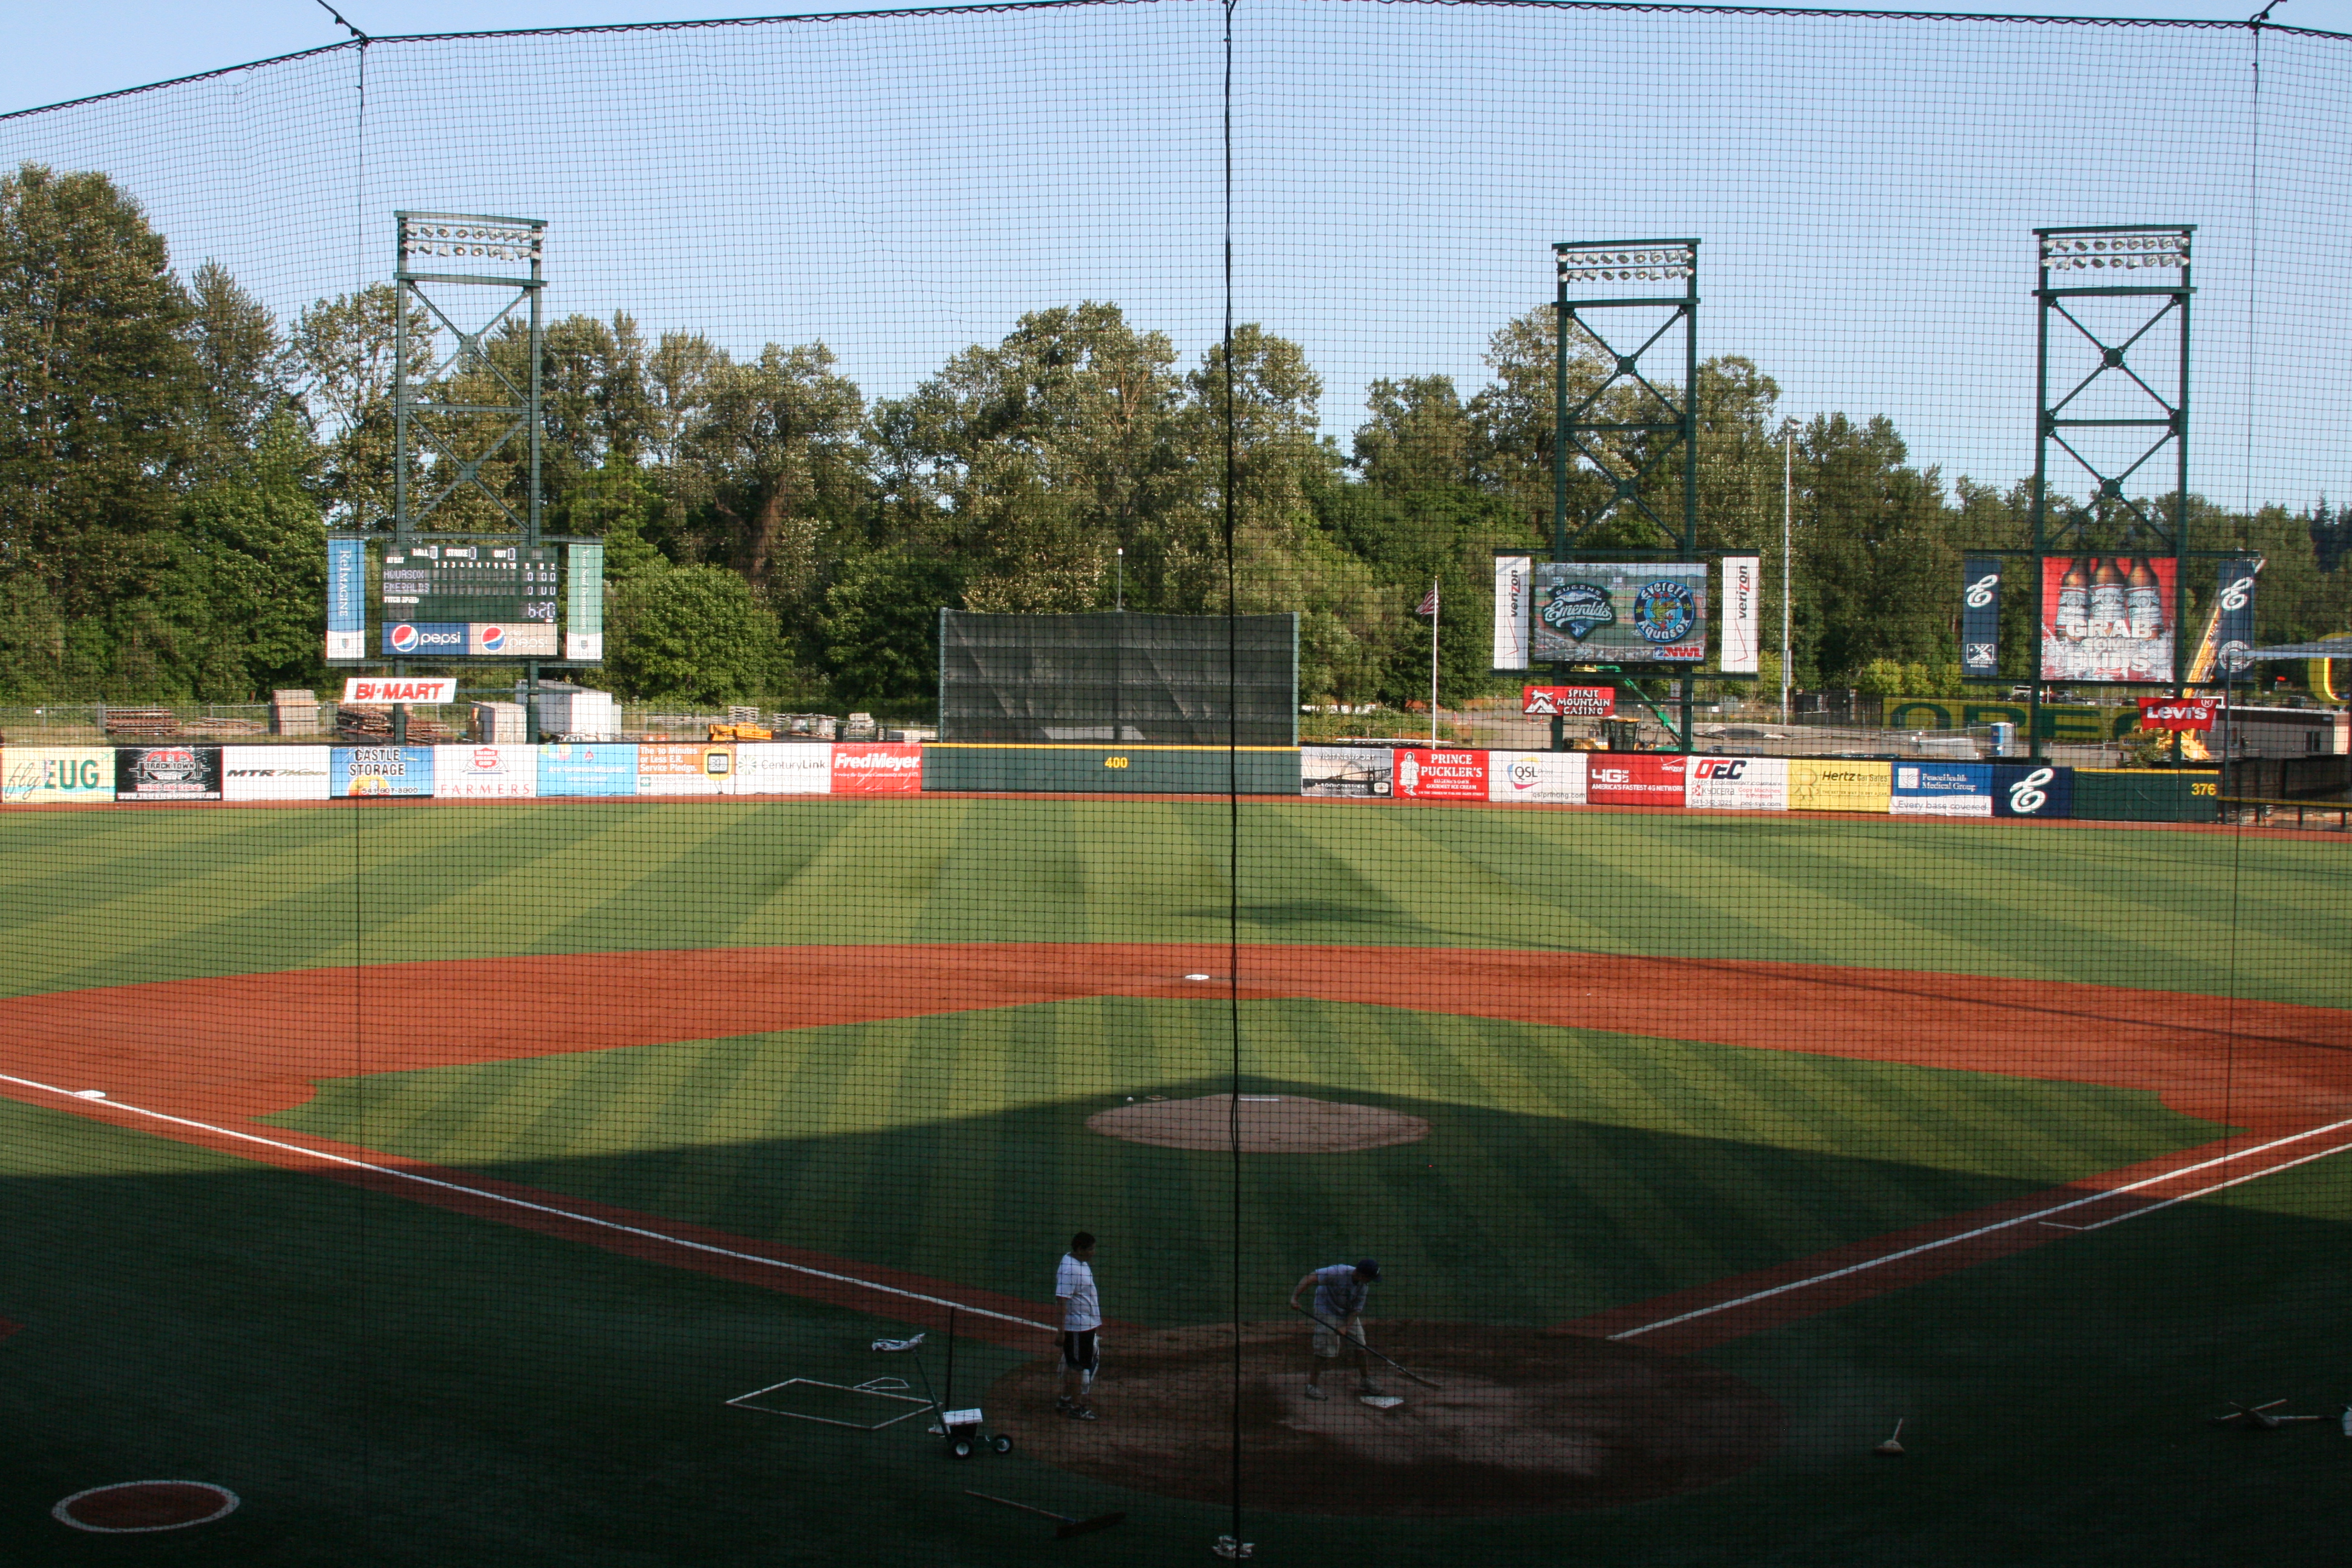 PK Park, Eugene, Oregon – Paul's Ballparks